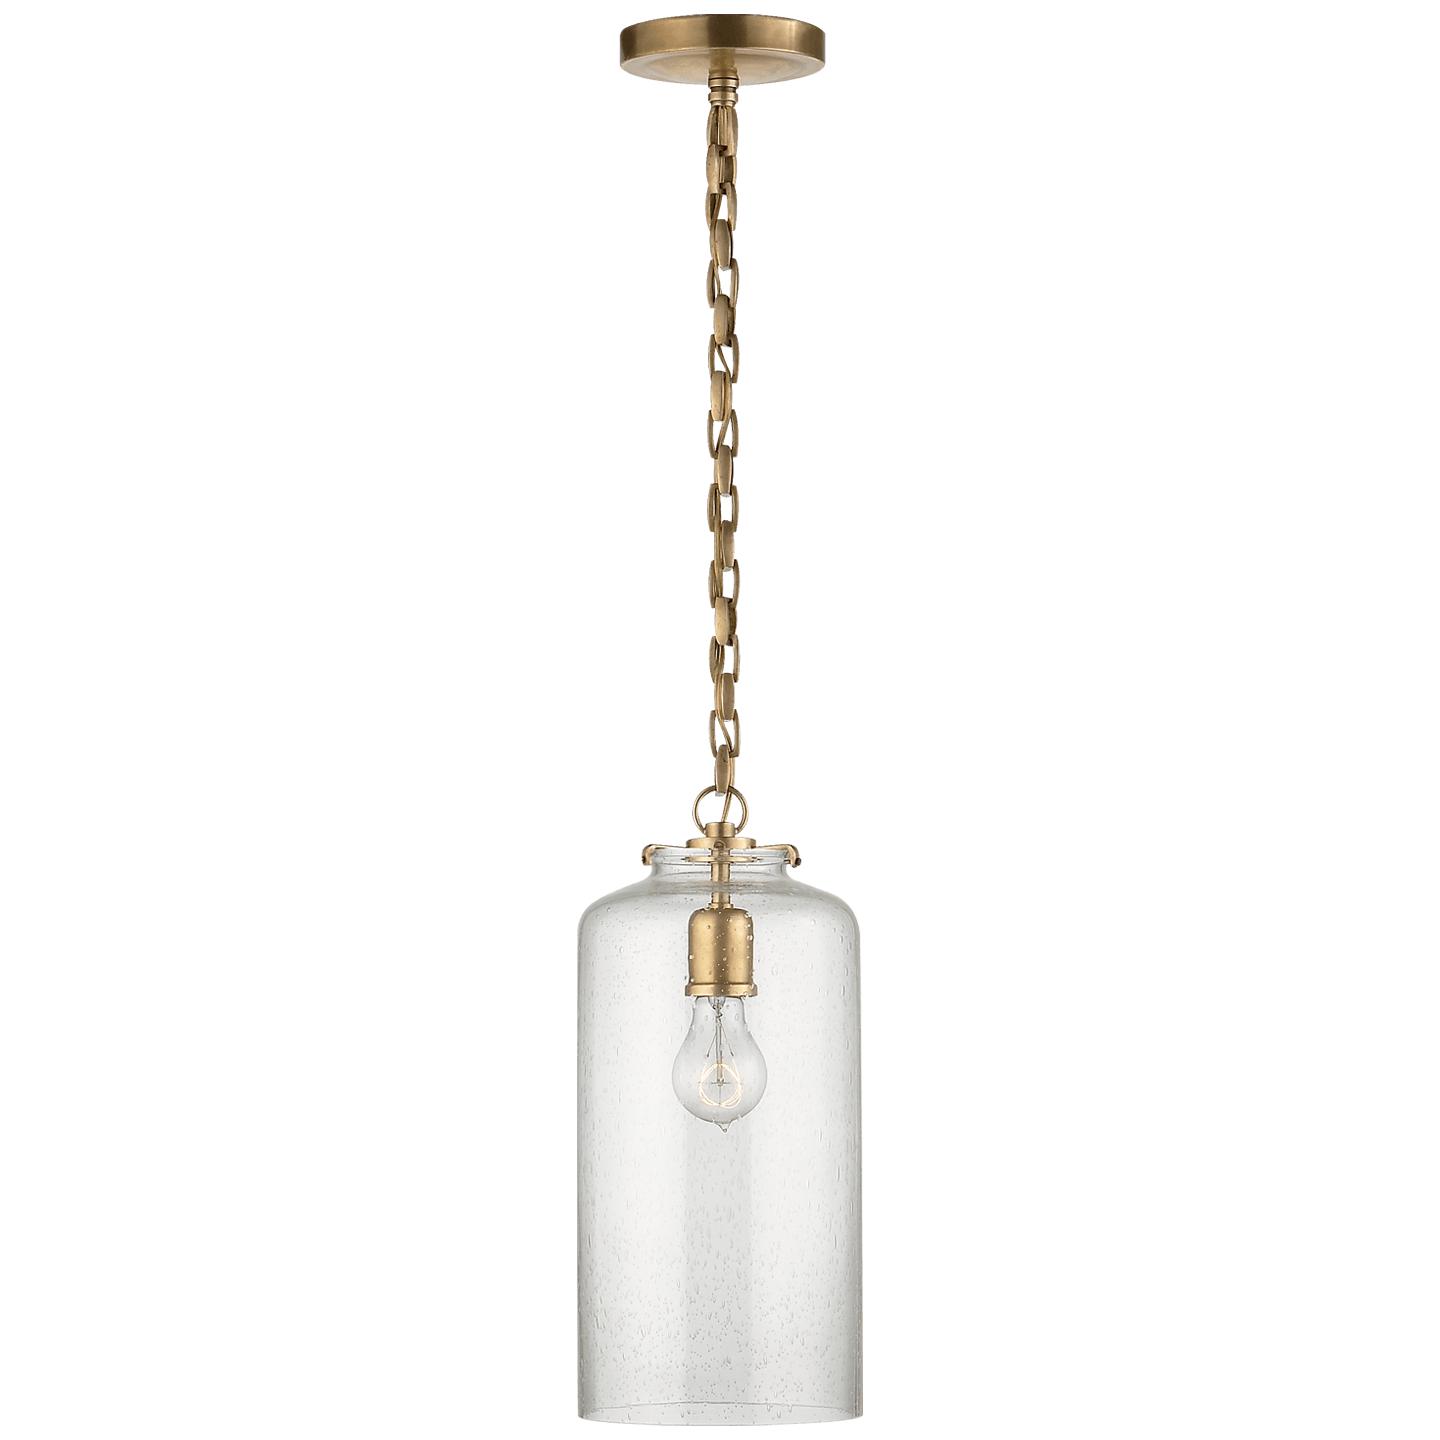 Купить Подвесной светильник Katie Cylinder Pendant в интернет-магазине roooms.ru